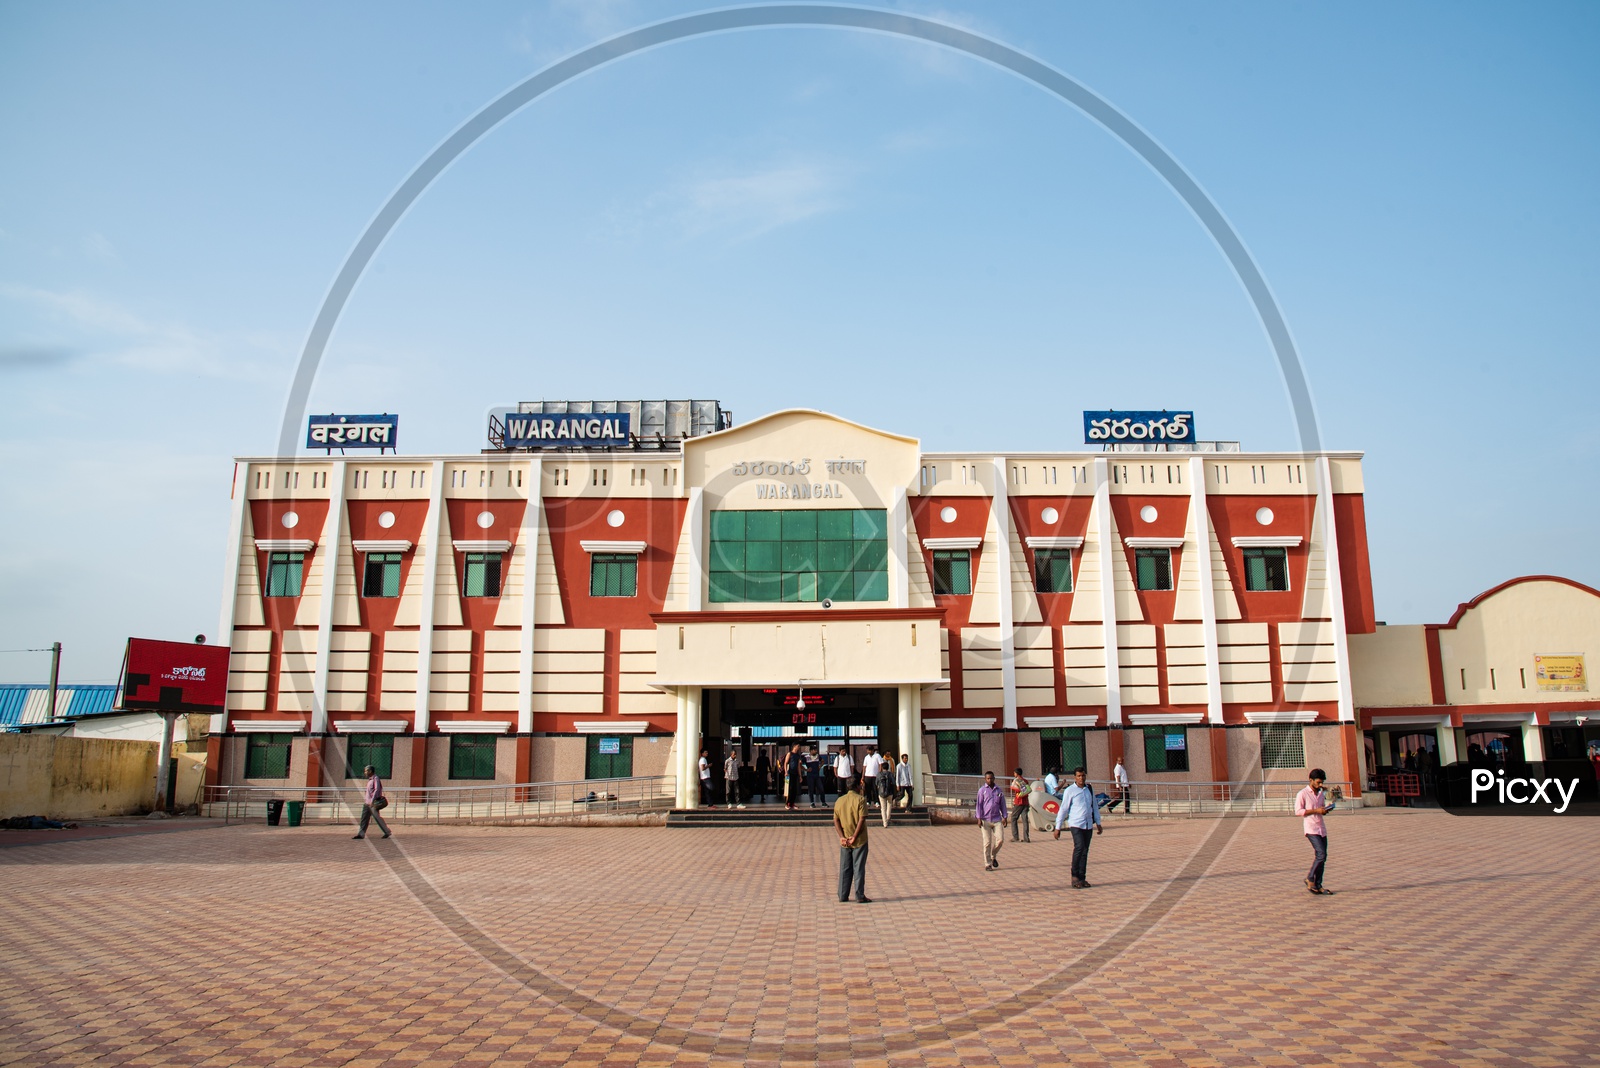 Warangal railway Station, Telangana